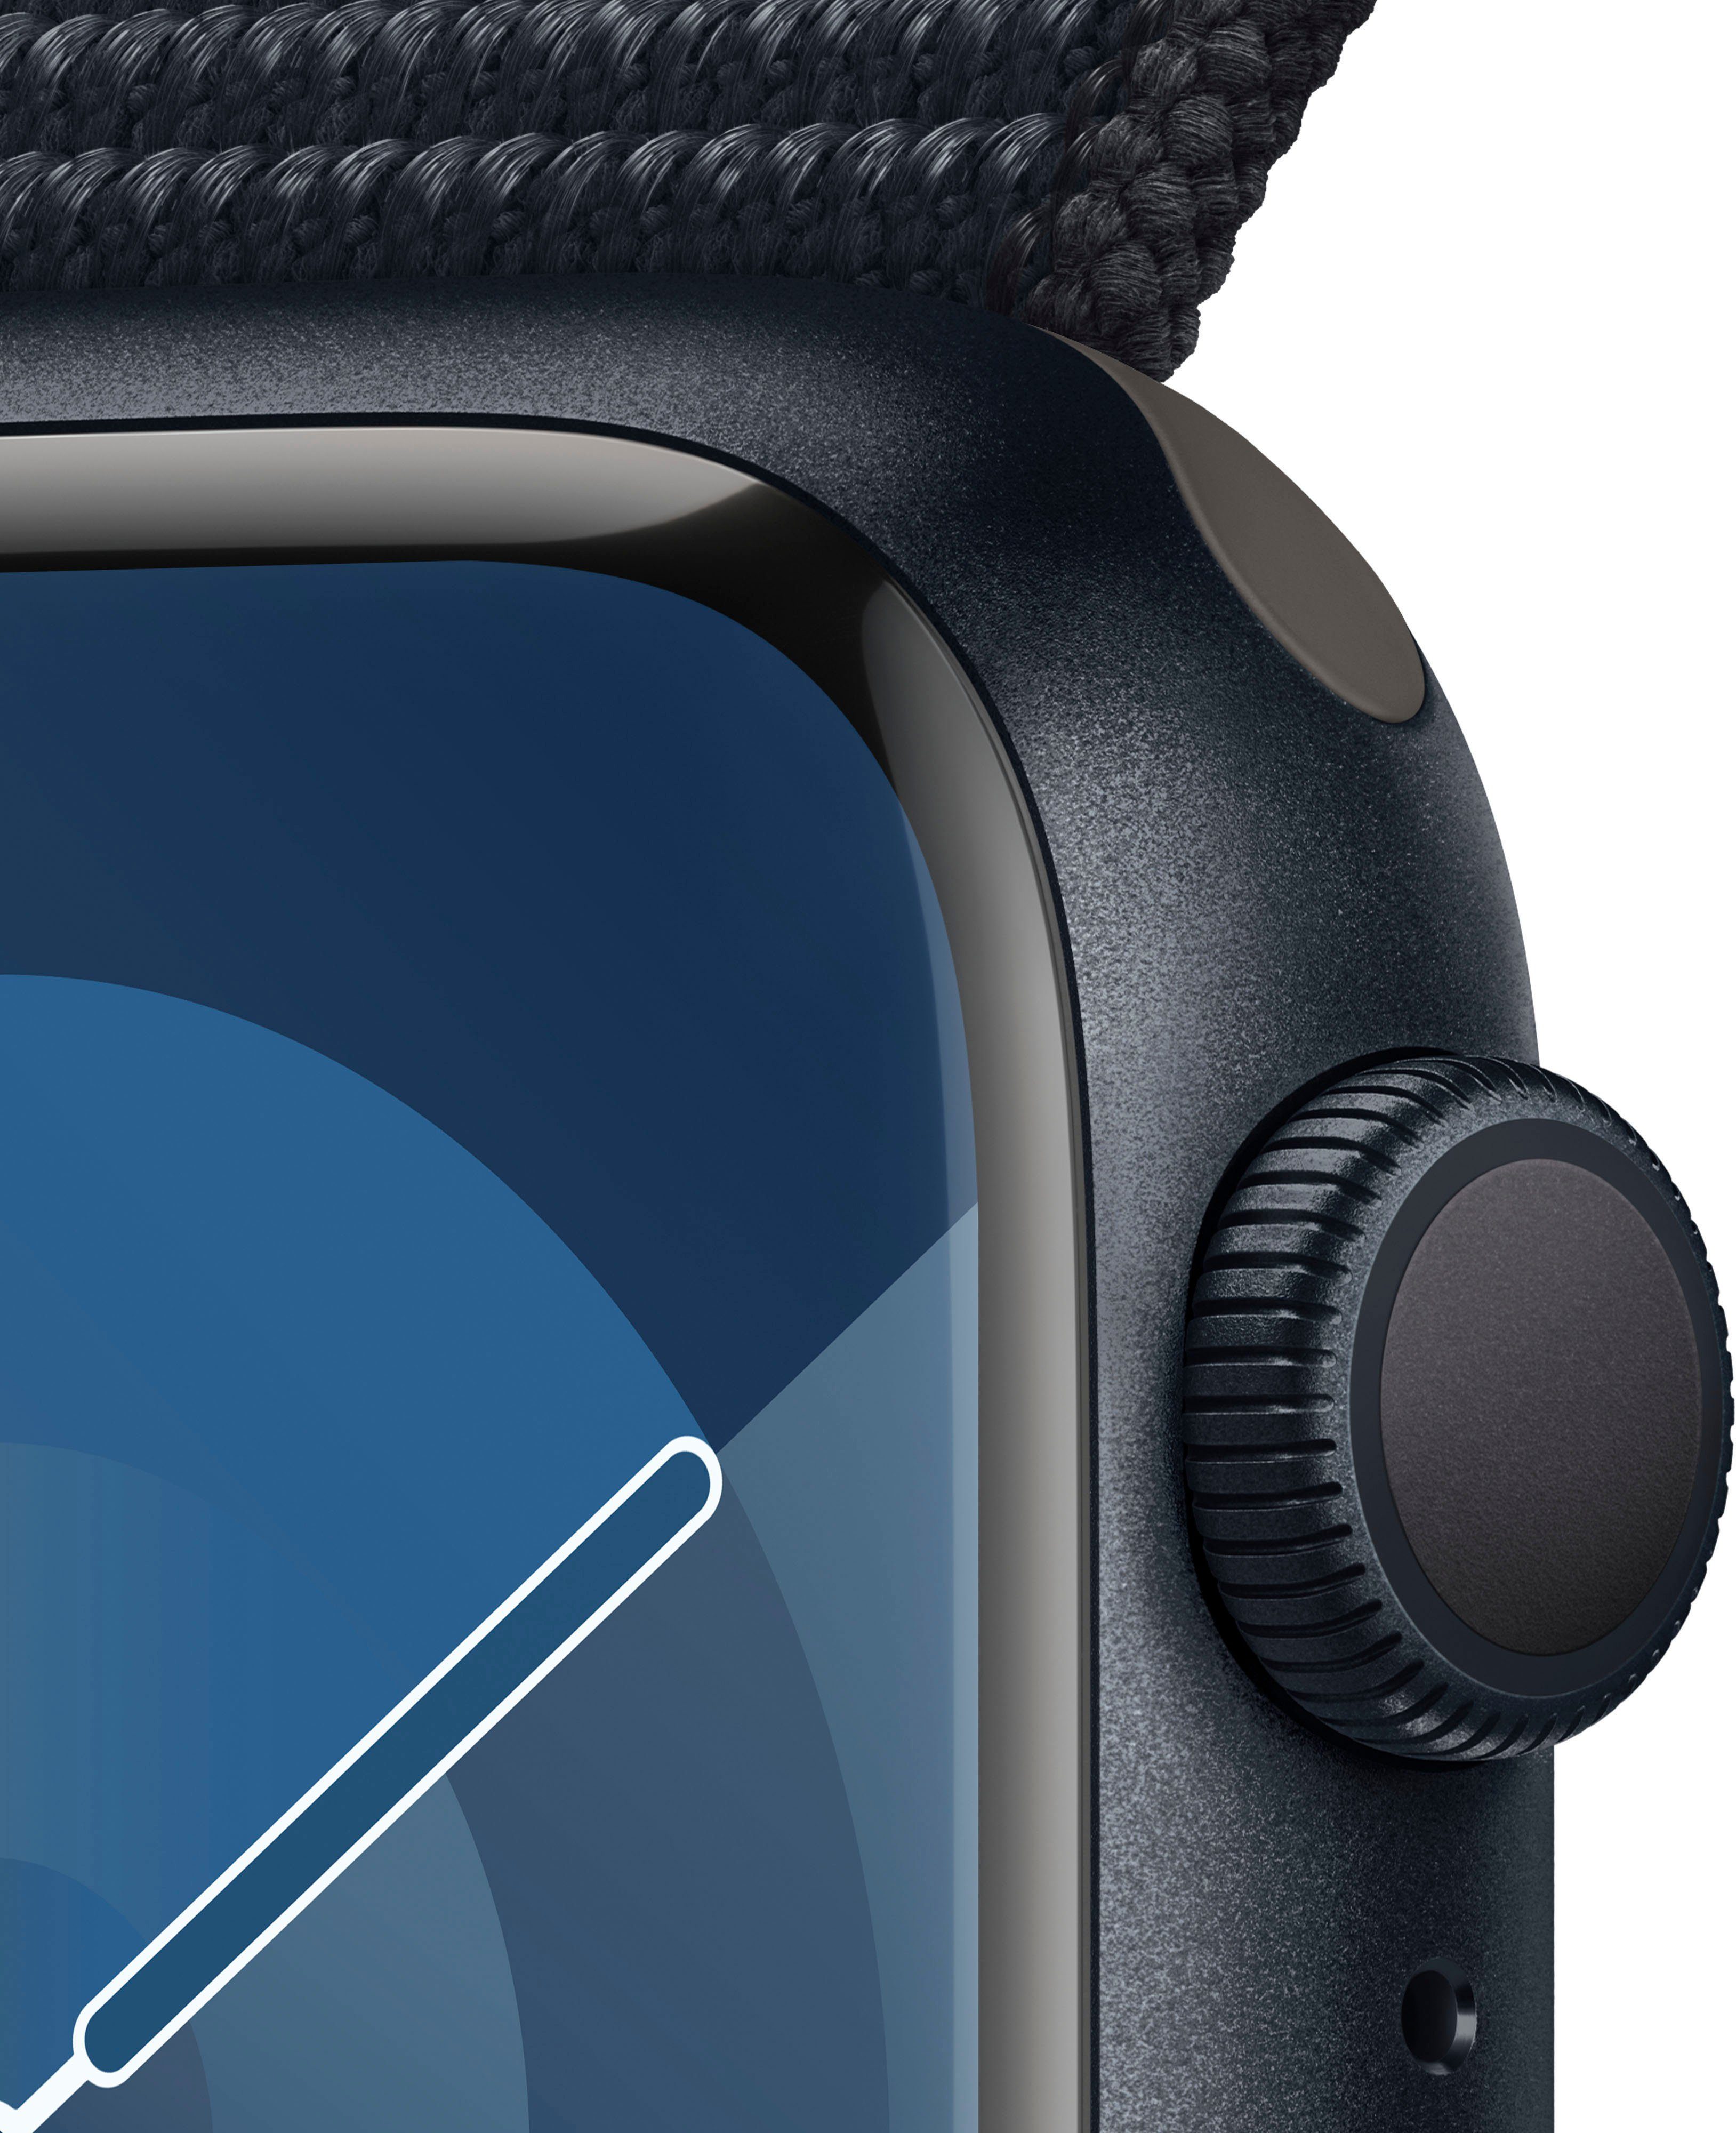 Mitternacht Series GPS Watch Loop 10), Sport Smartwatch OS Apple cm/1,69 Watch Zoll, Aluminium Mitternacht | (4,1 9 41mm